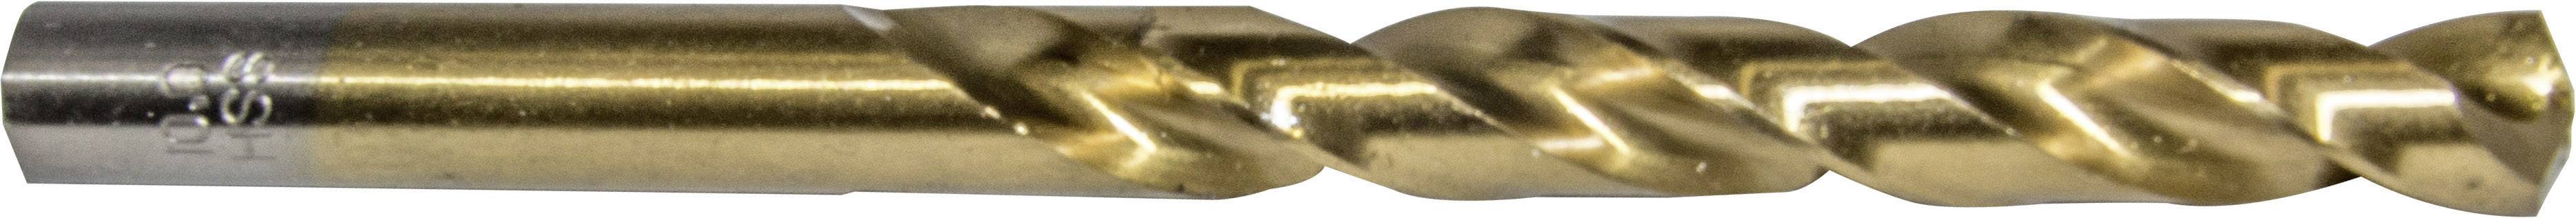 HELLER 29257 3 Metall-Spiralbohrer 1 Stück 3.2 mm Gesamtlänge 65 mm 1 St.